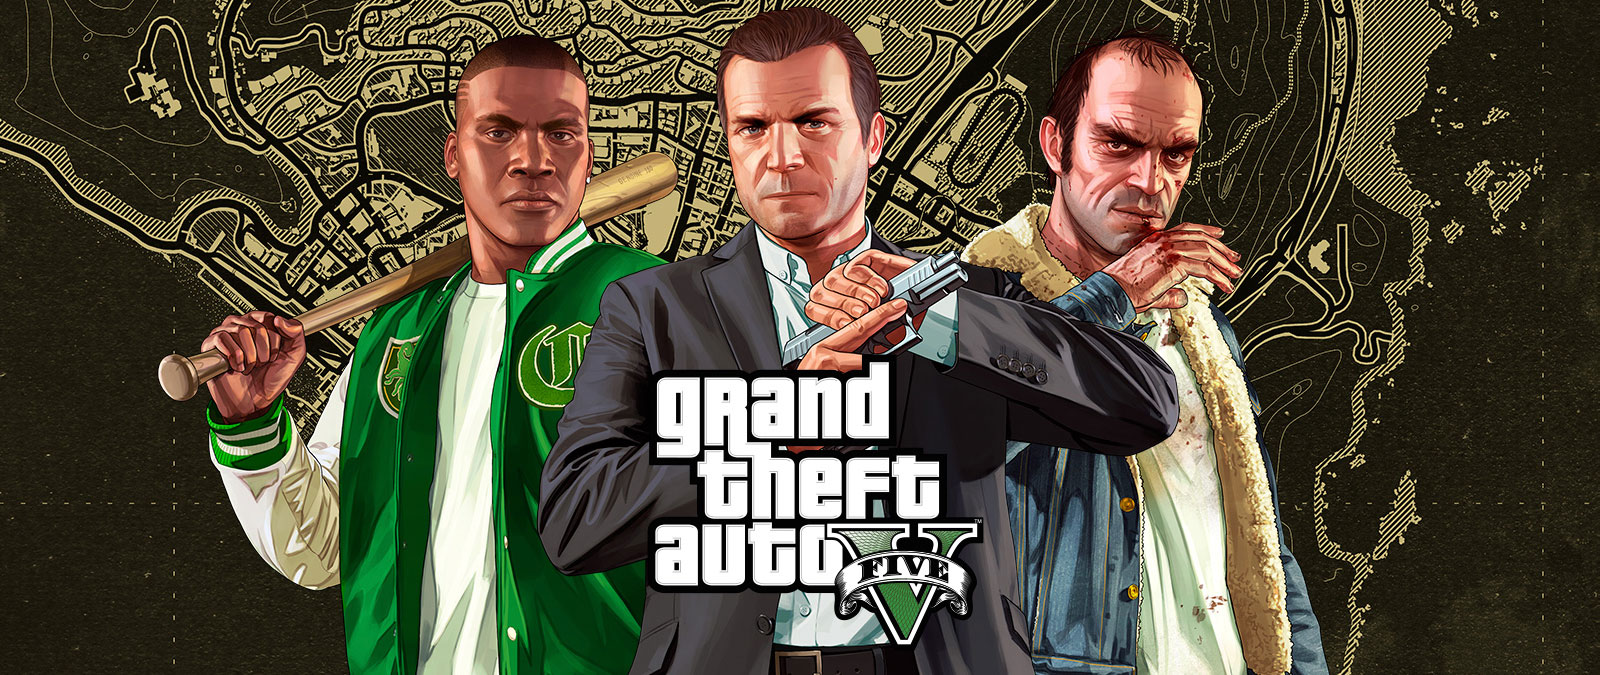 Grand Theft Auto V: Franklin Clinton, Michael de Santa e Trevor Phillips in piedi davanti a una mappa di Los Santos